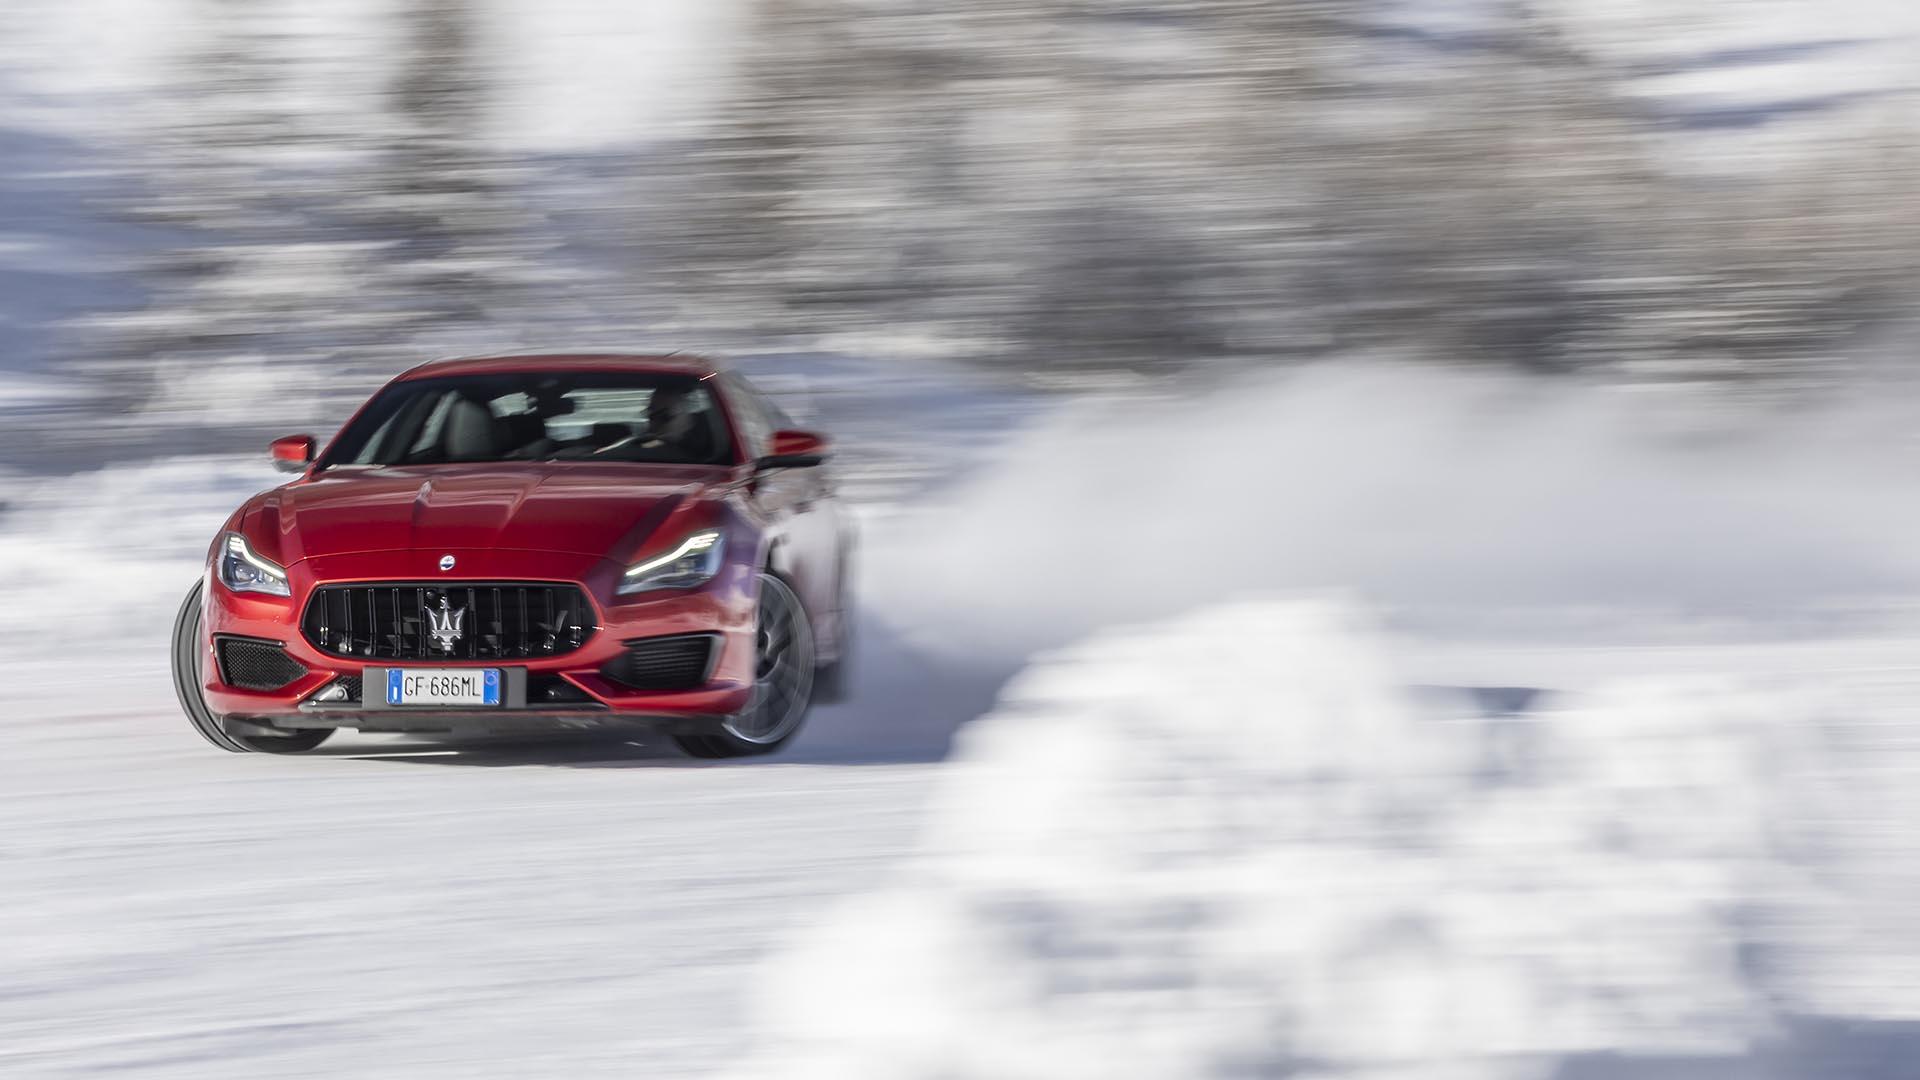 Top Gear Magazine 224 content: farewell Maserati V8 in the snow